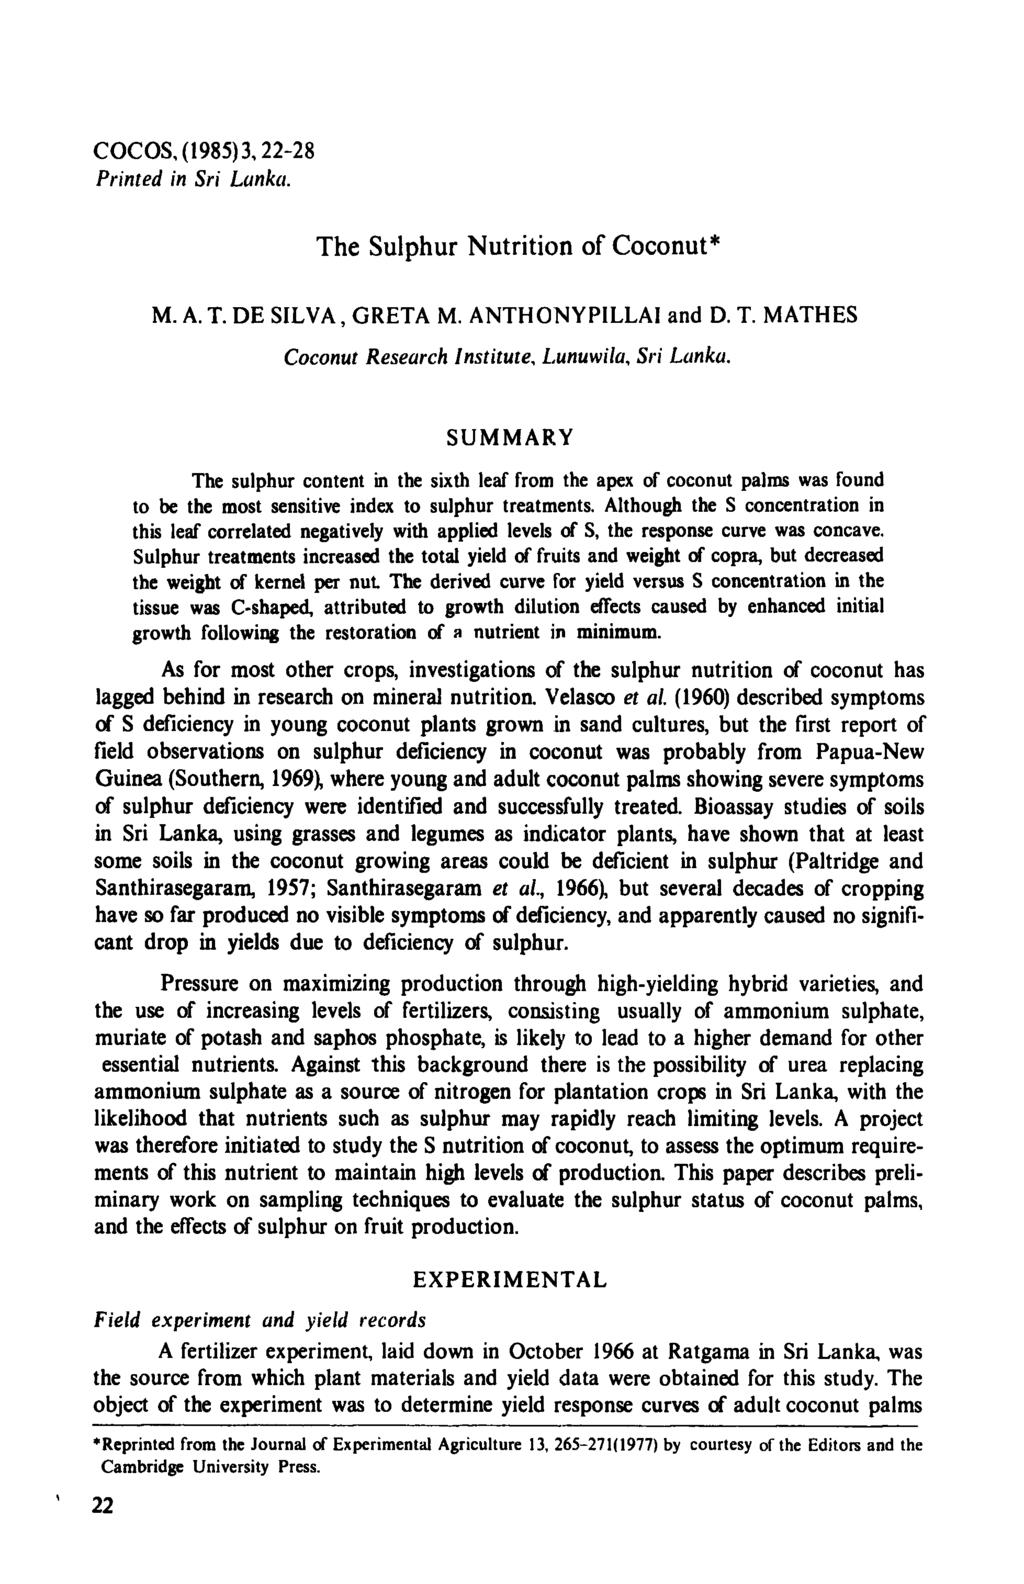 COCOS, (1985)3,22-28 Printed in Sri Lanka. The Sulphur Nutrition of Coconut* M. A. T. DE SILVA, GRETA M. ANTHONYPILLAI and D. T. MATHES Coconut Research Institute, Lunuwila, Sri Lanka.